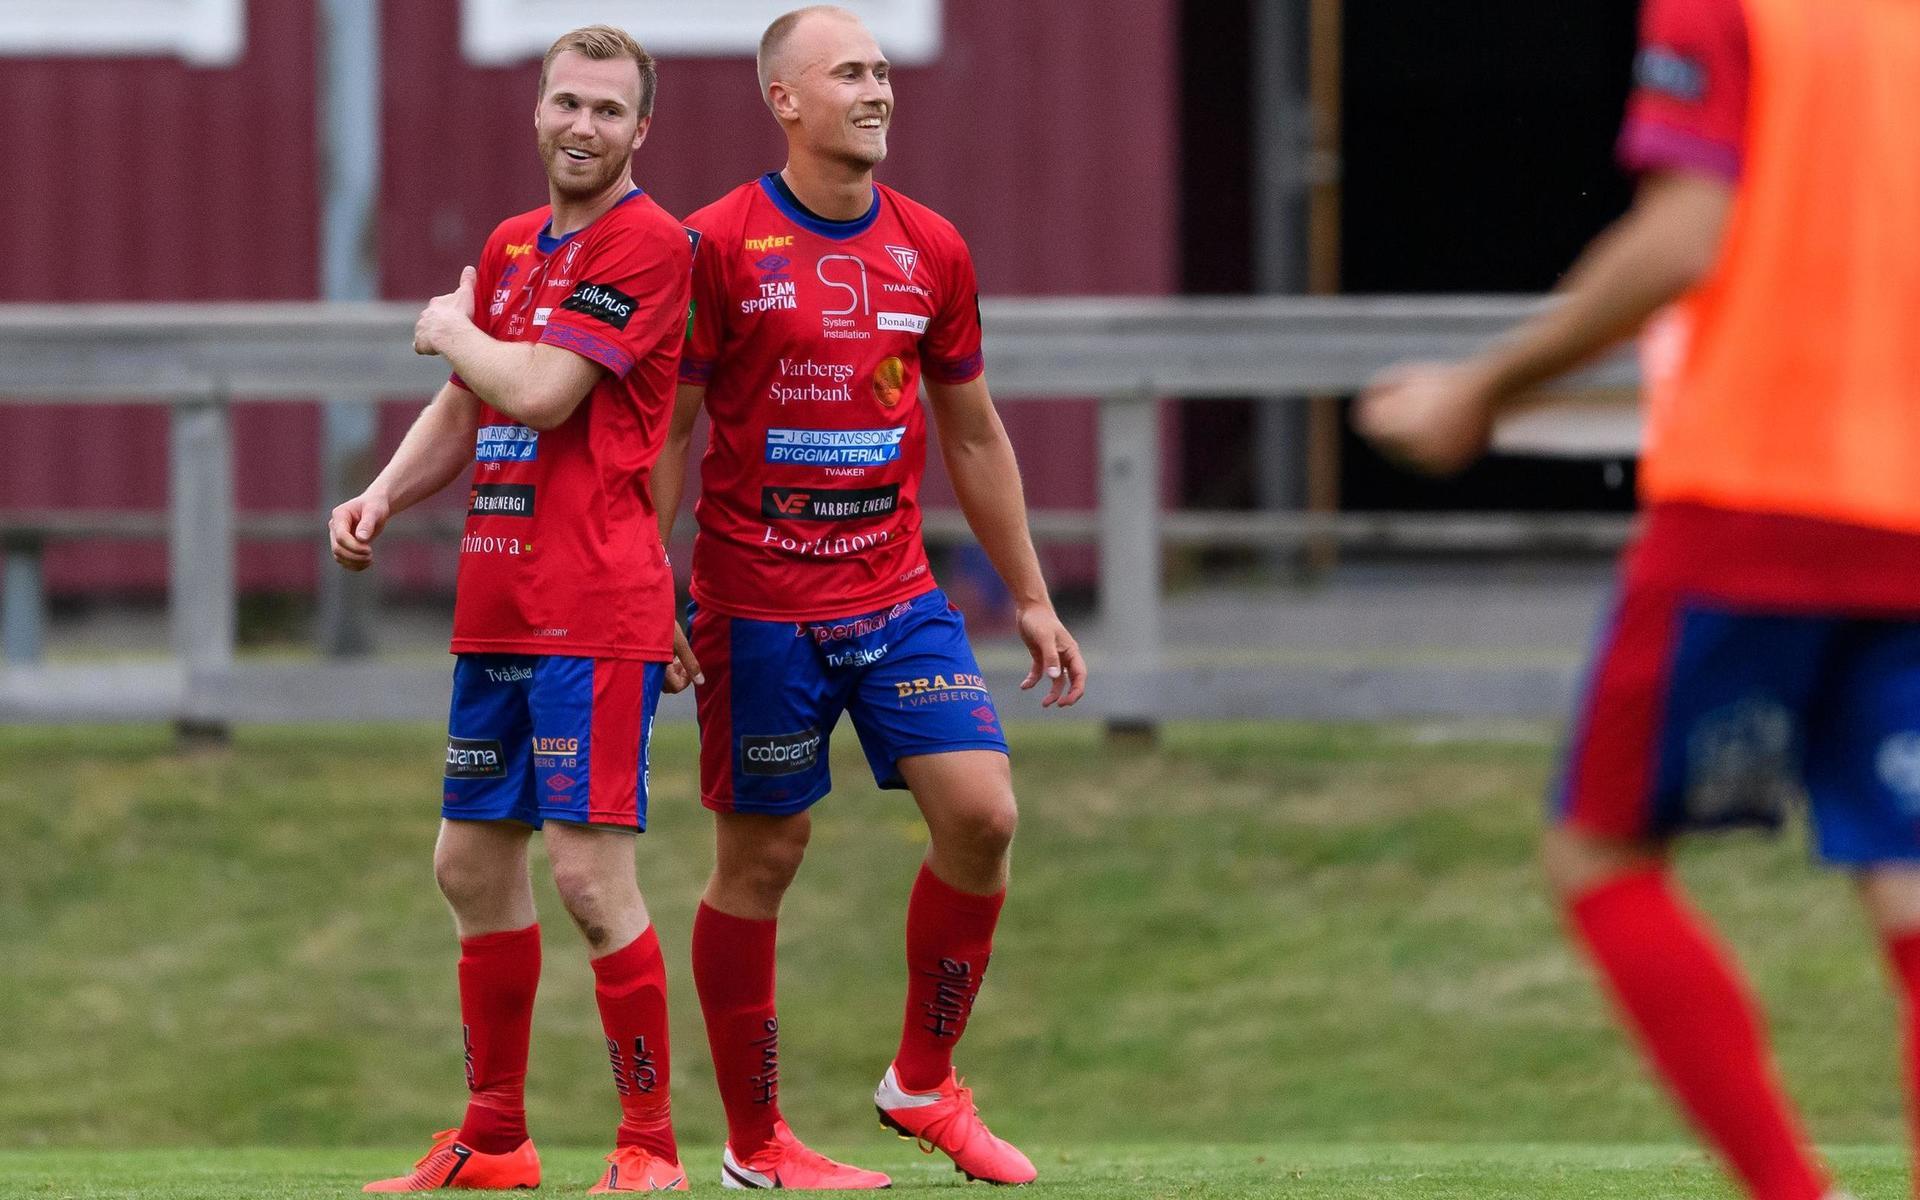 Tvååkers Per Karlsson och Jakob Adolfsson jublar efter fotbollsmatchen i Division 1 södra mellan Tvååker och Trollhättan den 1 juli 2020 i Tvååker.